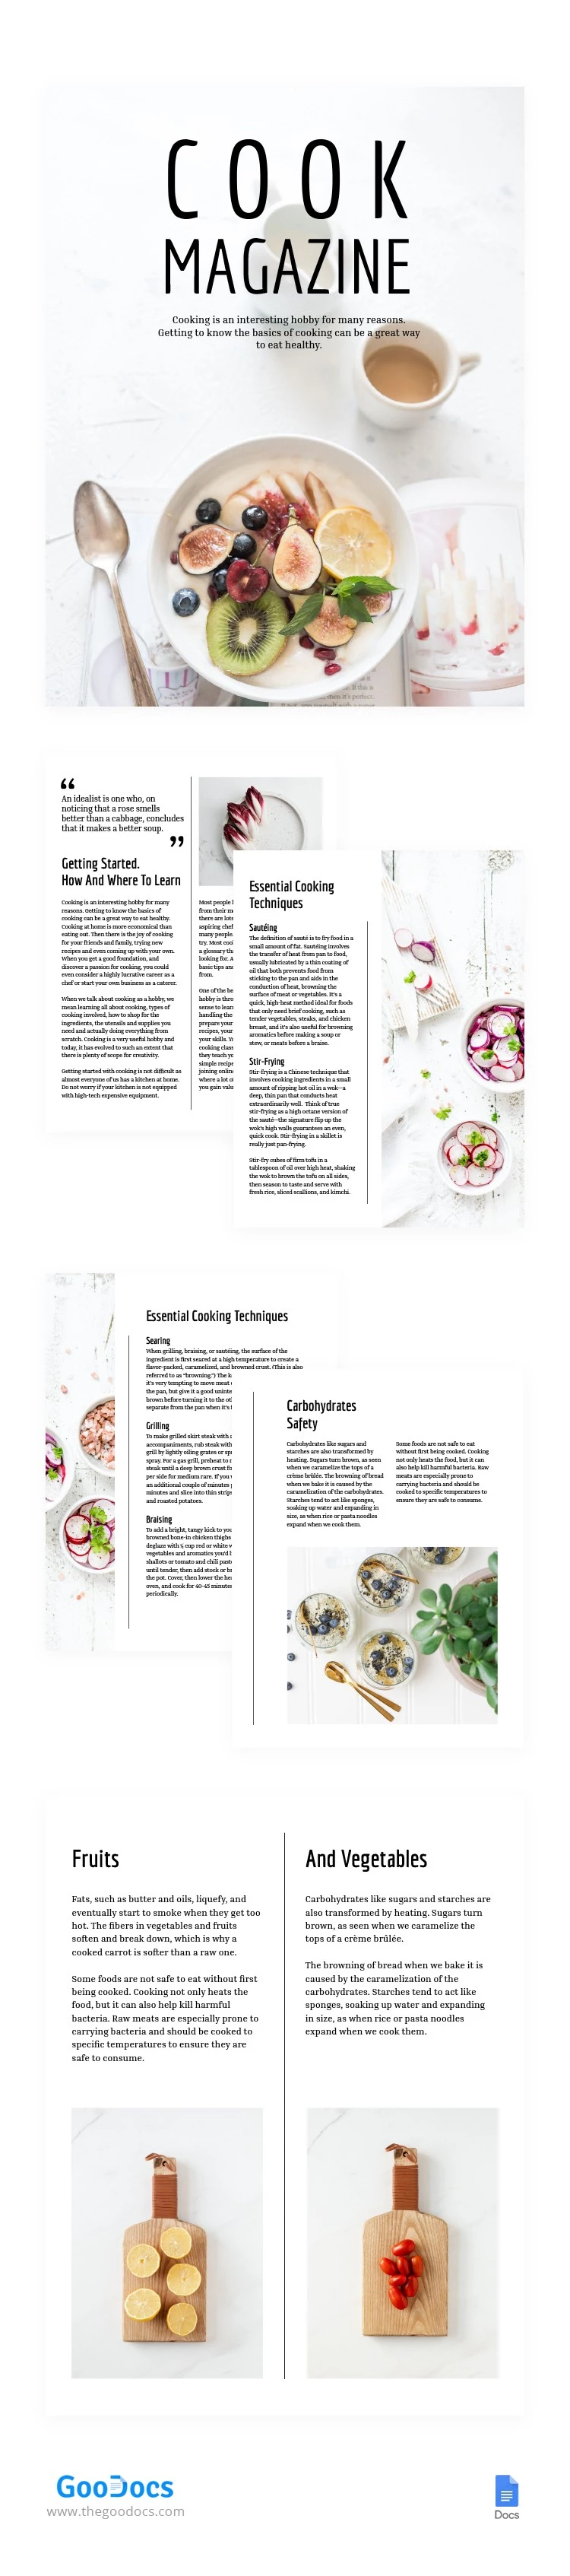 Revista de cocina minimalista en blanco - free Google Docs Template - 10064414